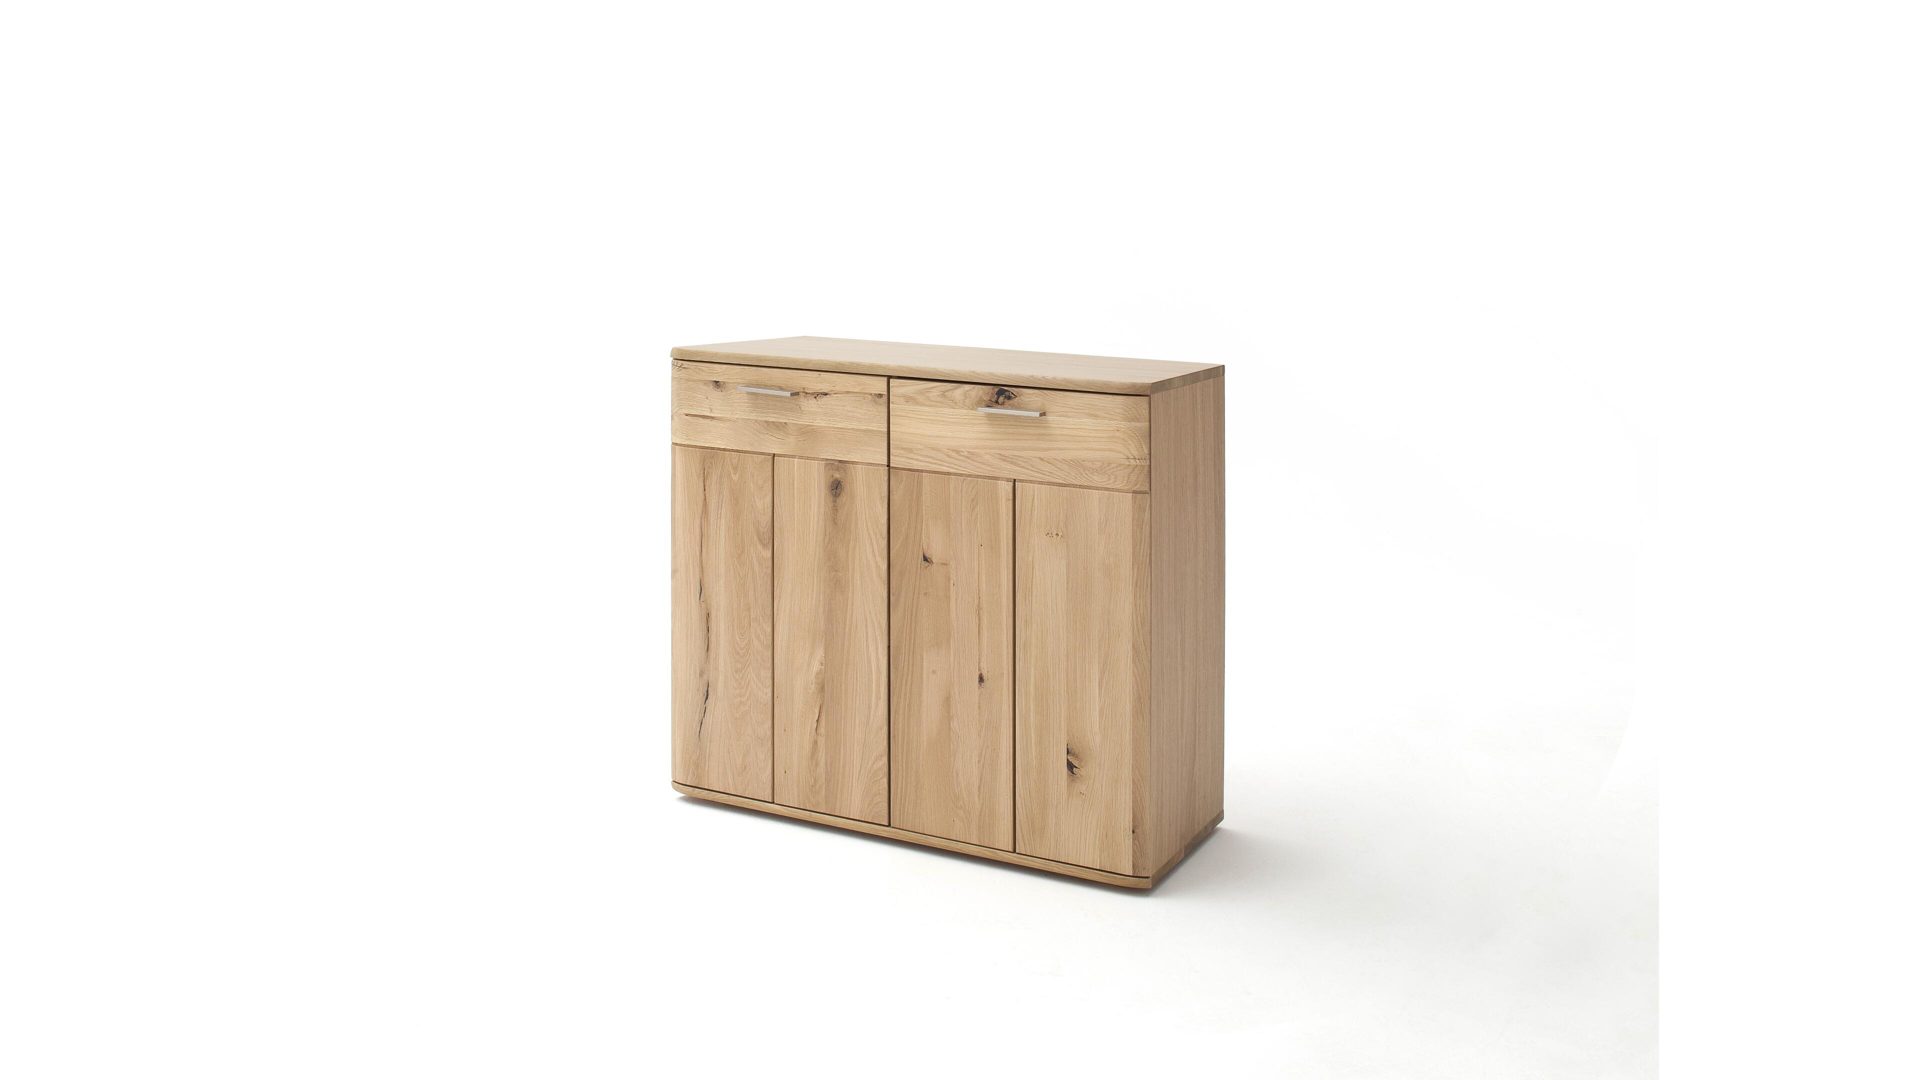 Türenkommode Mca furniture aus Holz in Holzfarben Türenkommode biancofarbene Balkeneiche – zwei Türen